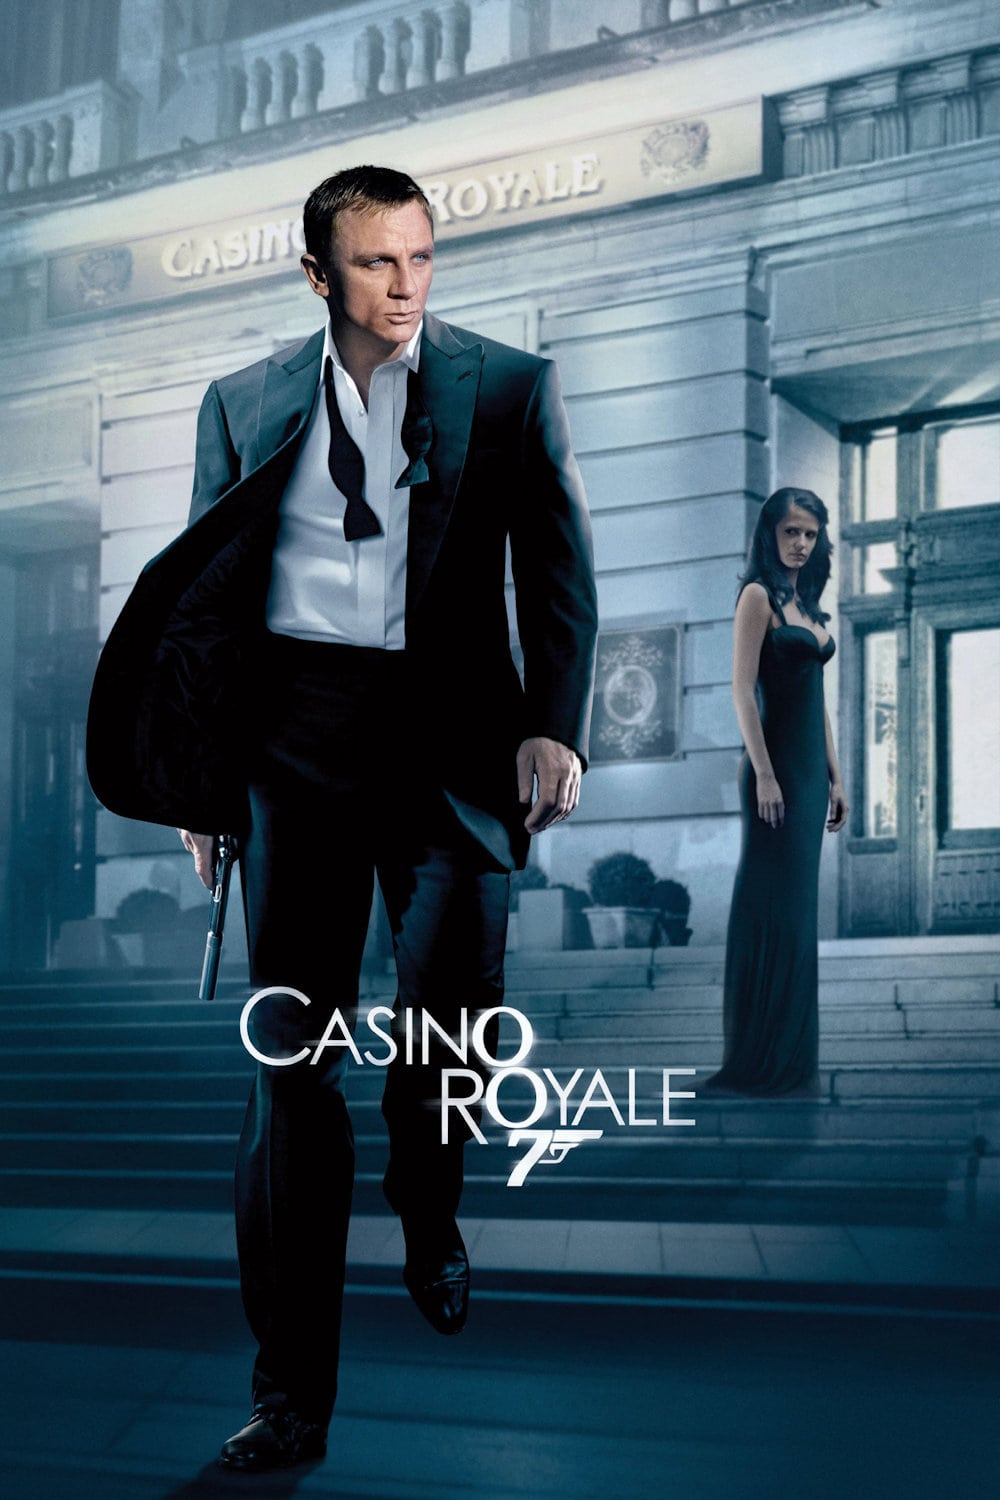 Caratula de CASINO ROYALE (007 CASINO ROYALE / Casino Royale) 